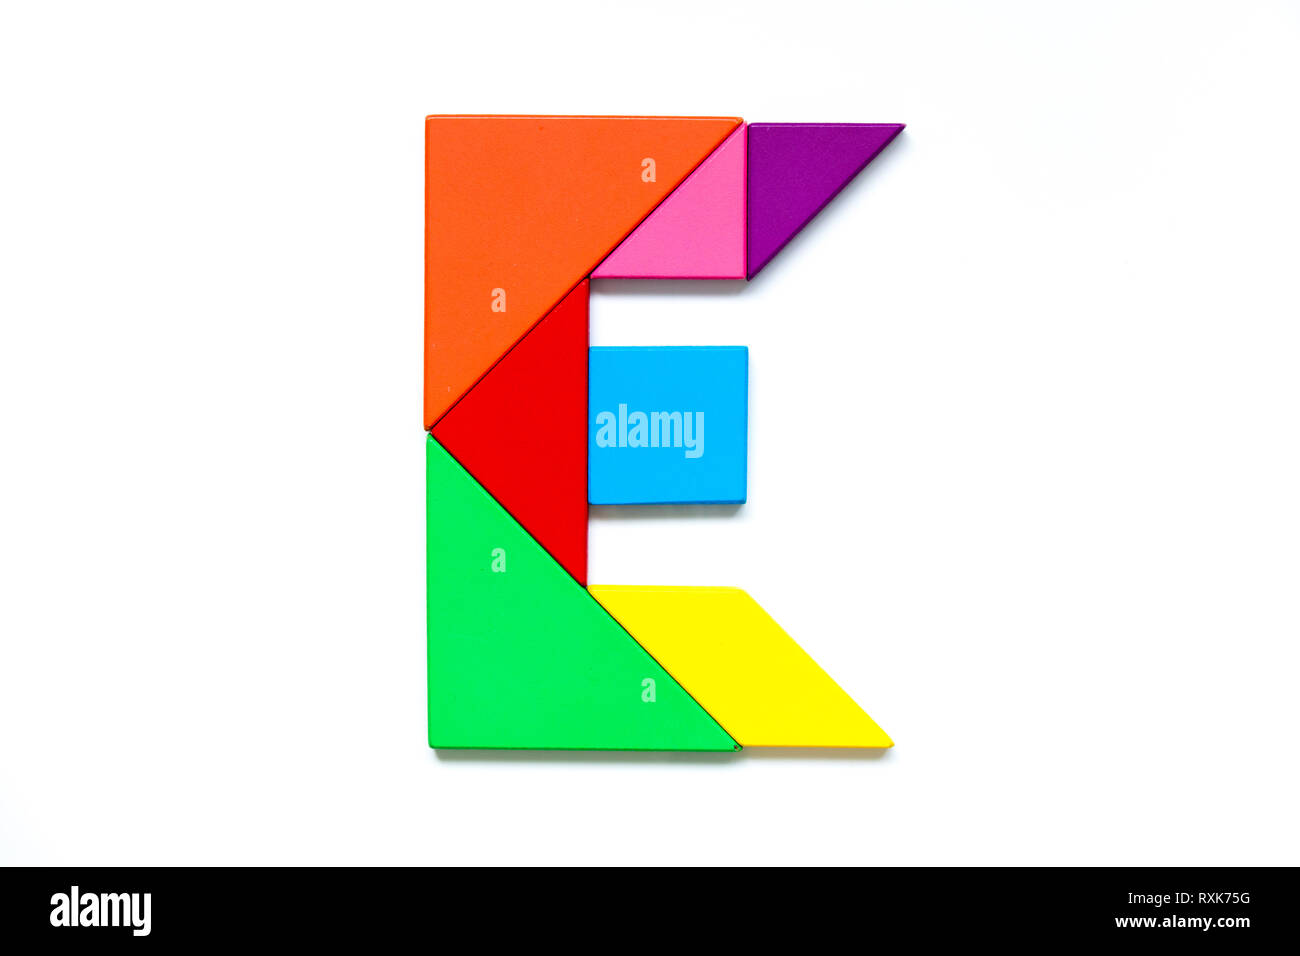 Farbe tangram Puzzle im englischen Alphabet e Form auf weißem Hintergrund  Stockfotografie - Alamy